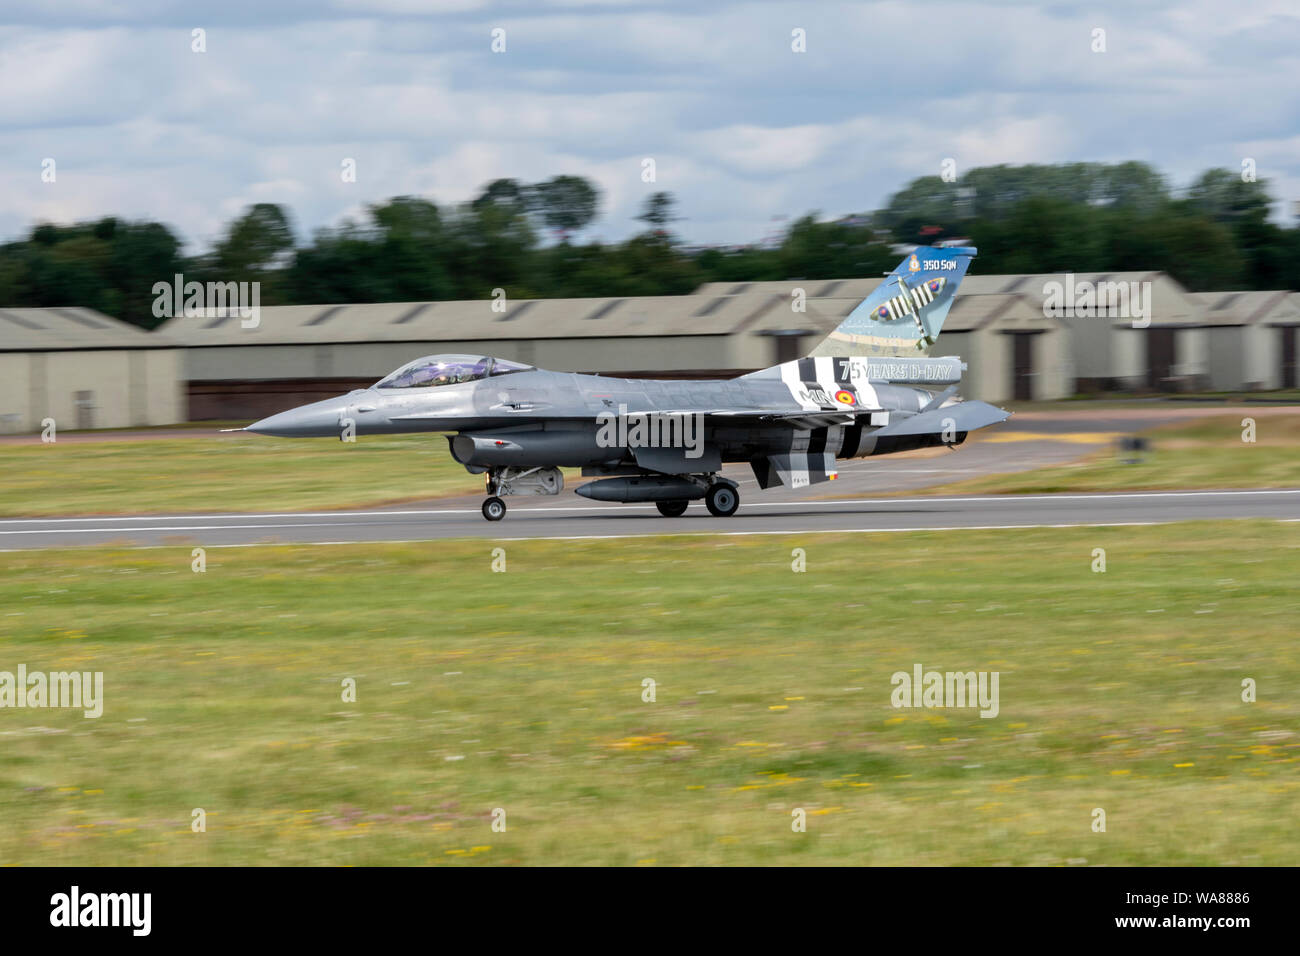 F-16 Airfraft featured nella NATO il settantesimo anniversario flypast presso il Royal International Air Tattoo 2019 da 2 ali; belga componente aria; Kleine Brog Foto Stock